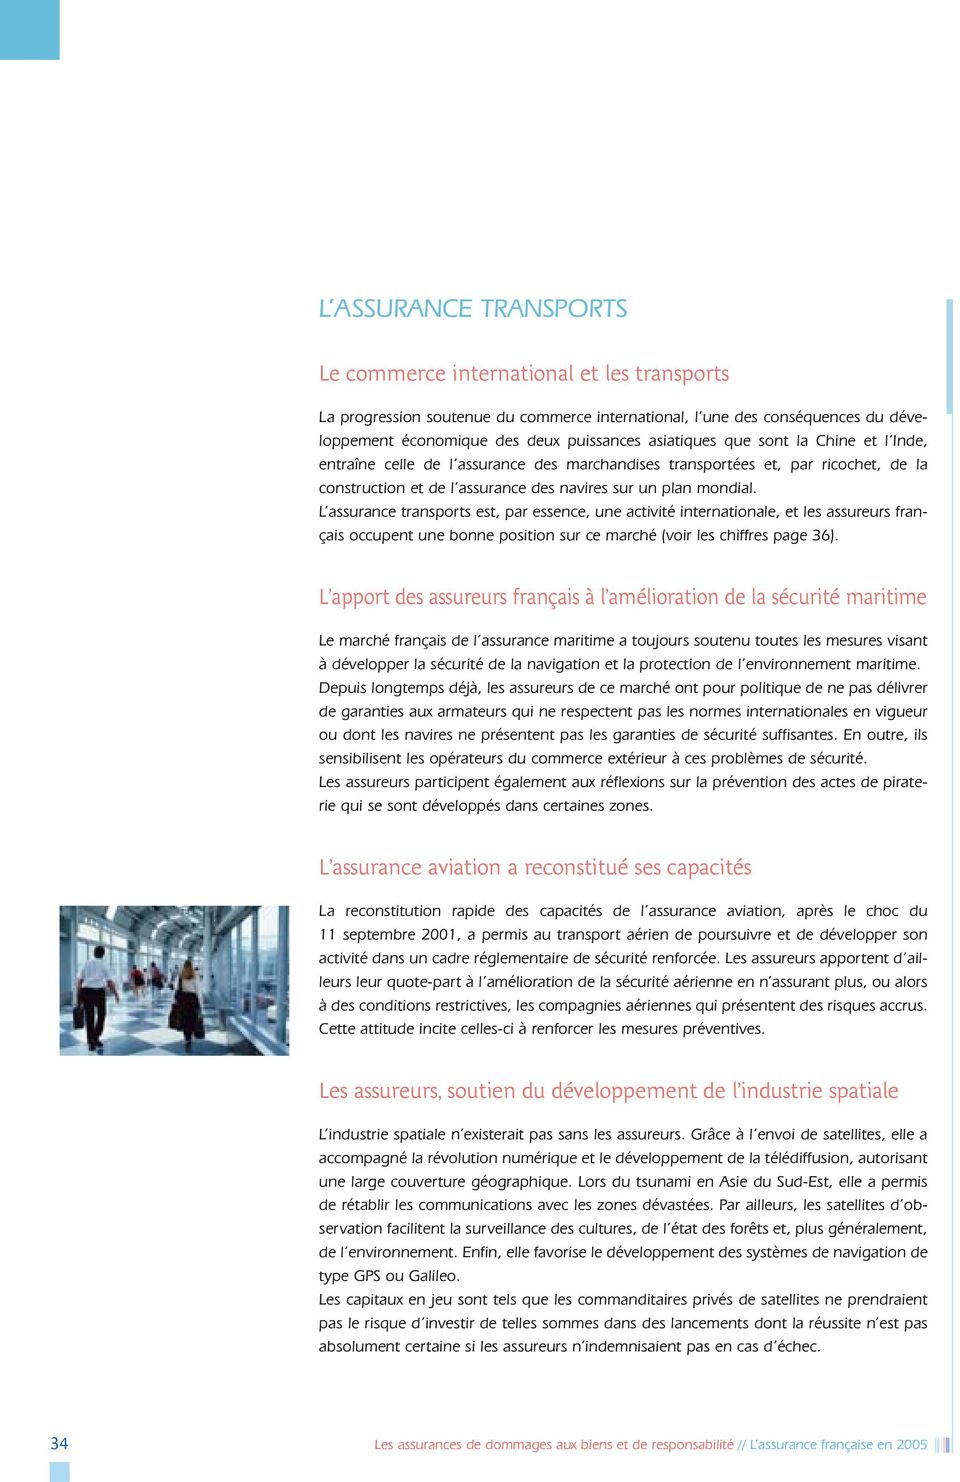 L assurance transports est, par essence, une activité internationale, et les assureurs français occupent une bonne position sur ce marché (voir les chiffres page 36).